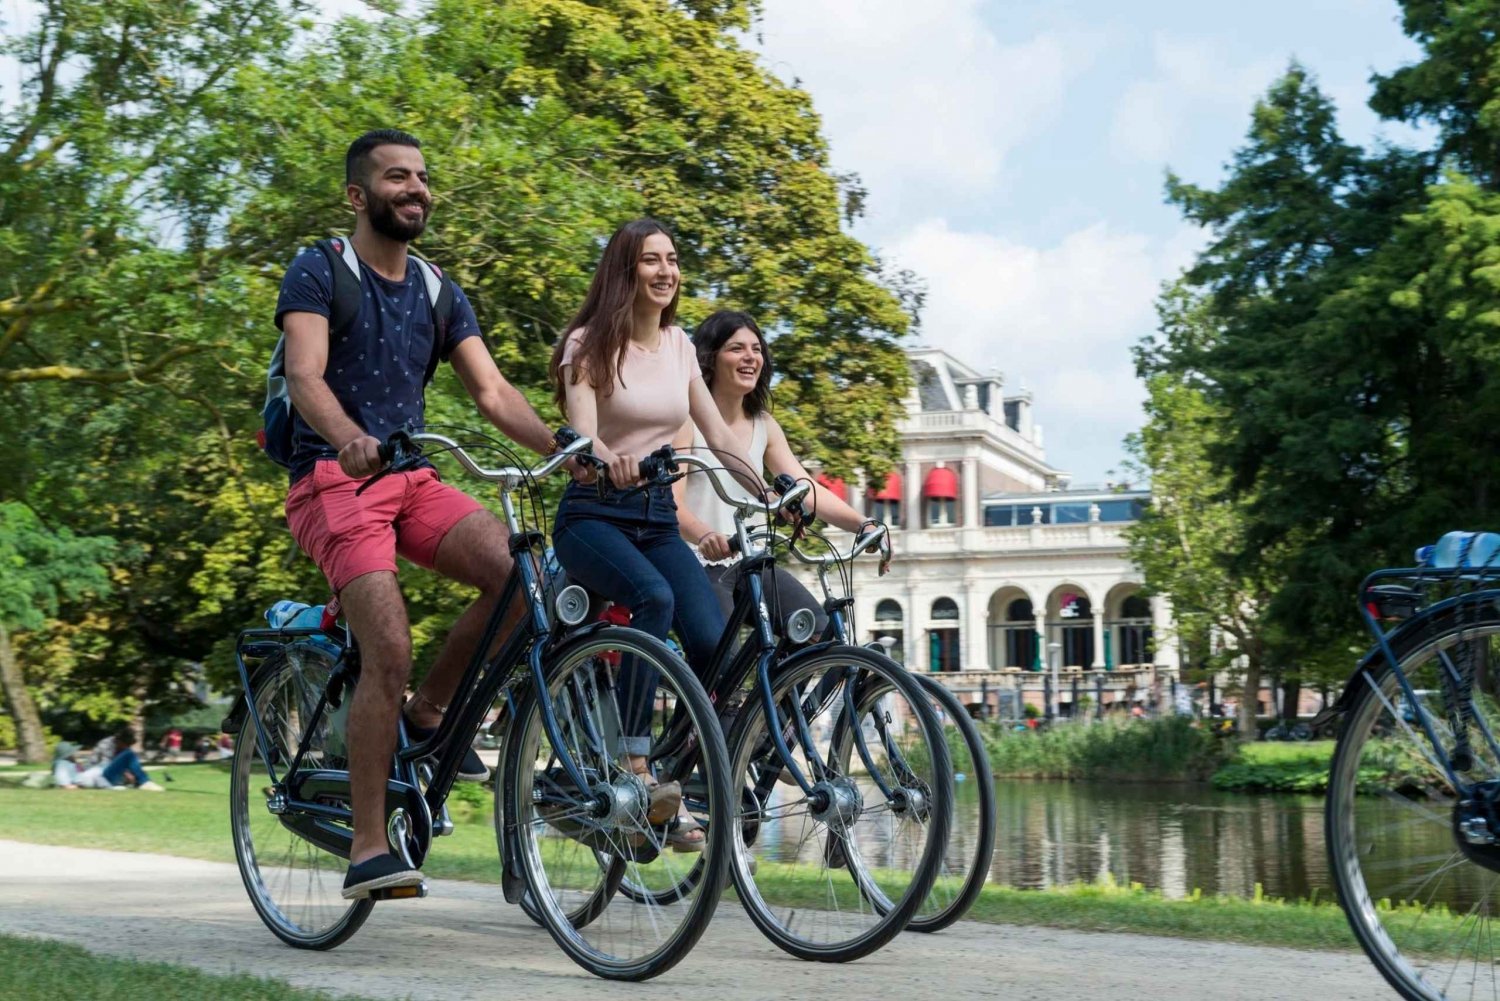 Hyr en cykel i Amsterdam | 1, 2, 3+ timmar